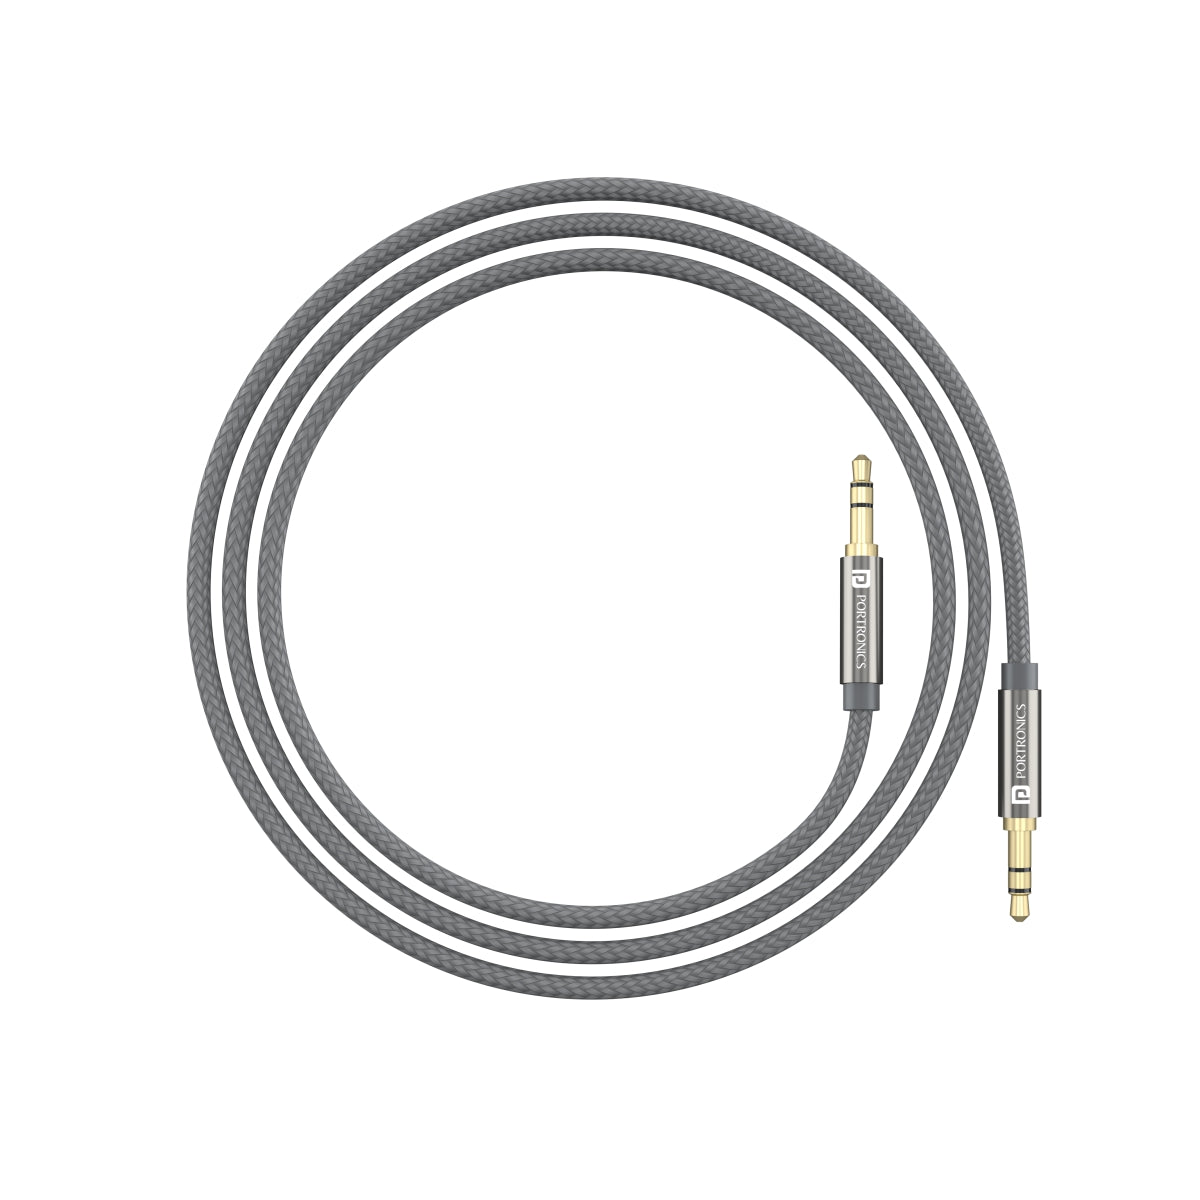 PORTRONICS-KONNECT AUX 7 High Quality 3.5mm AUX Cable